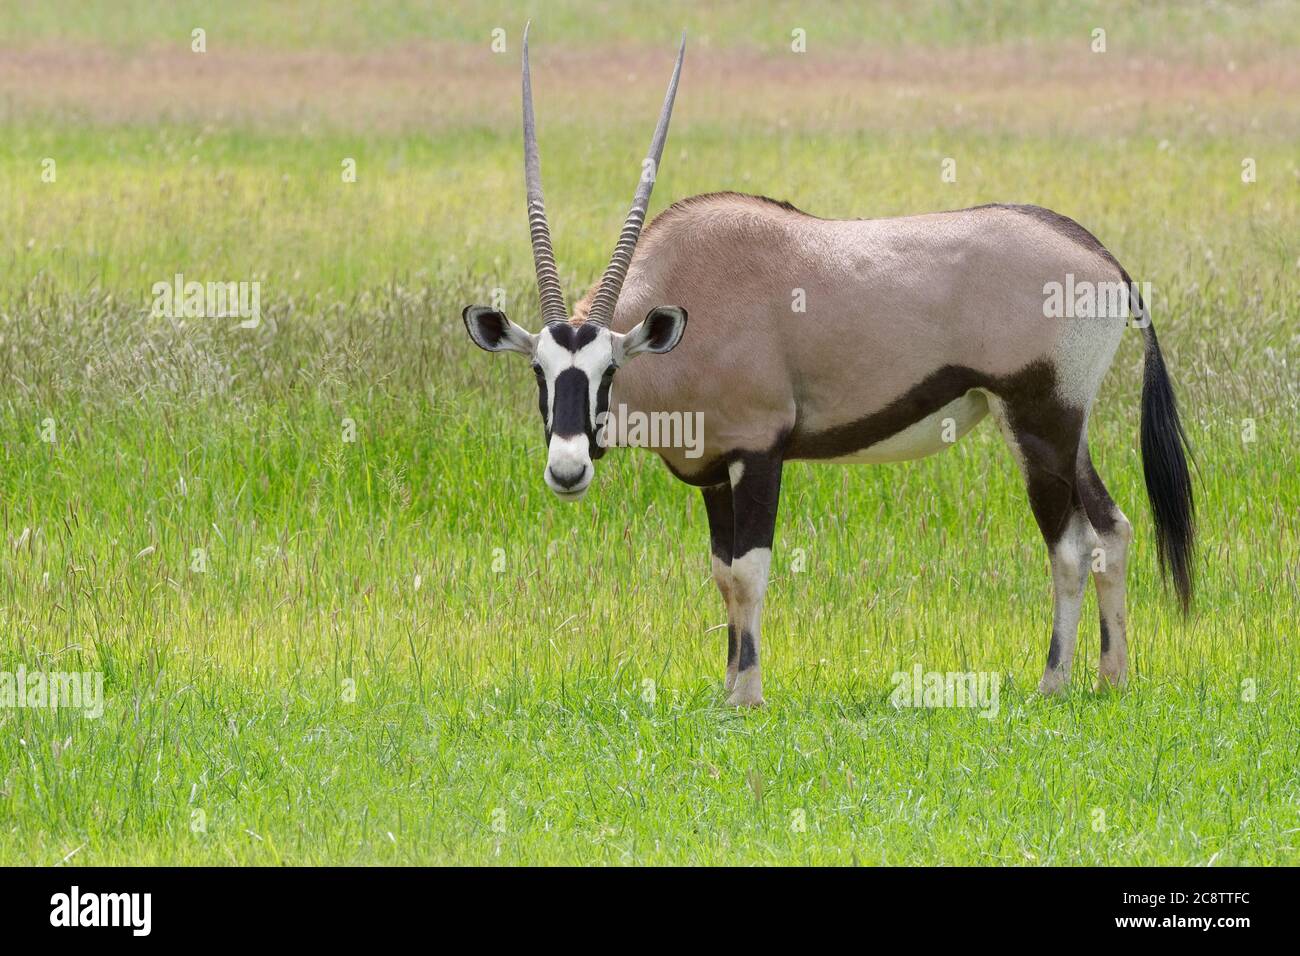 Gemsbok (Oryx gazella), femme adulte, alimentation, parc transfrontalier Kgalagadi, Cap Nord, Afrique du Sud, Afrique Banque D'Images